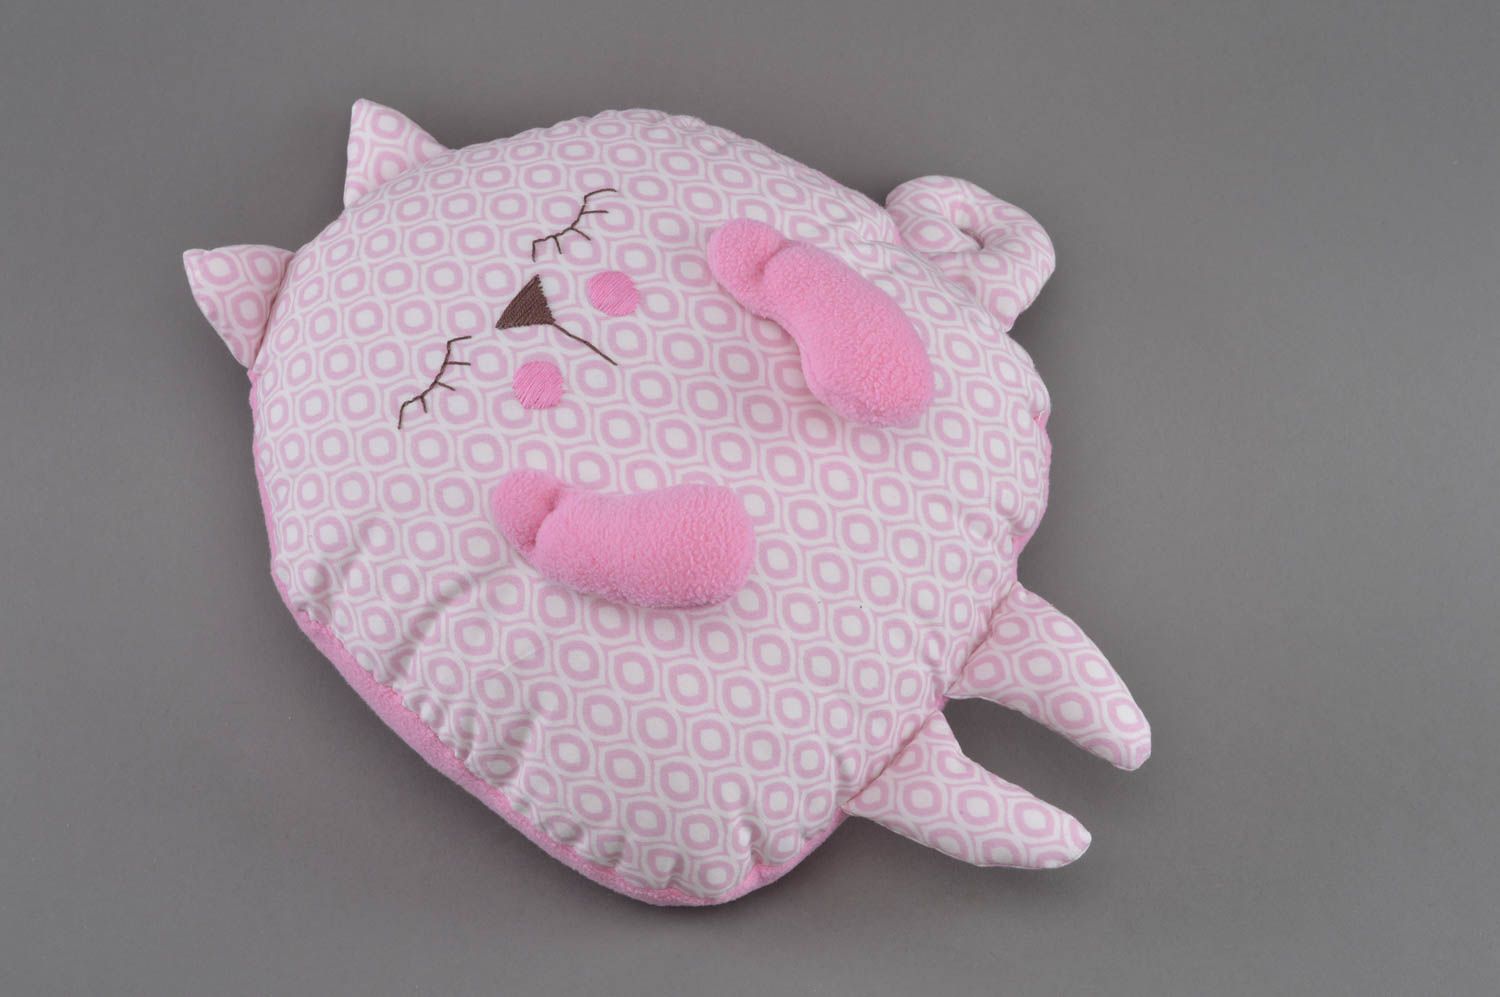 Мягкая игрушка подушка розово цвета в виде спящего кота небольшая ручной работы  фото 3